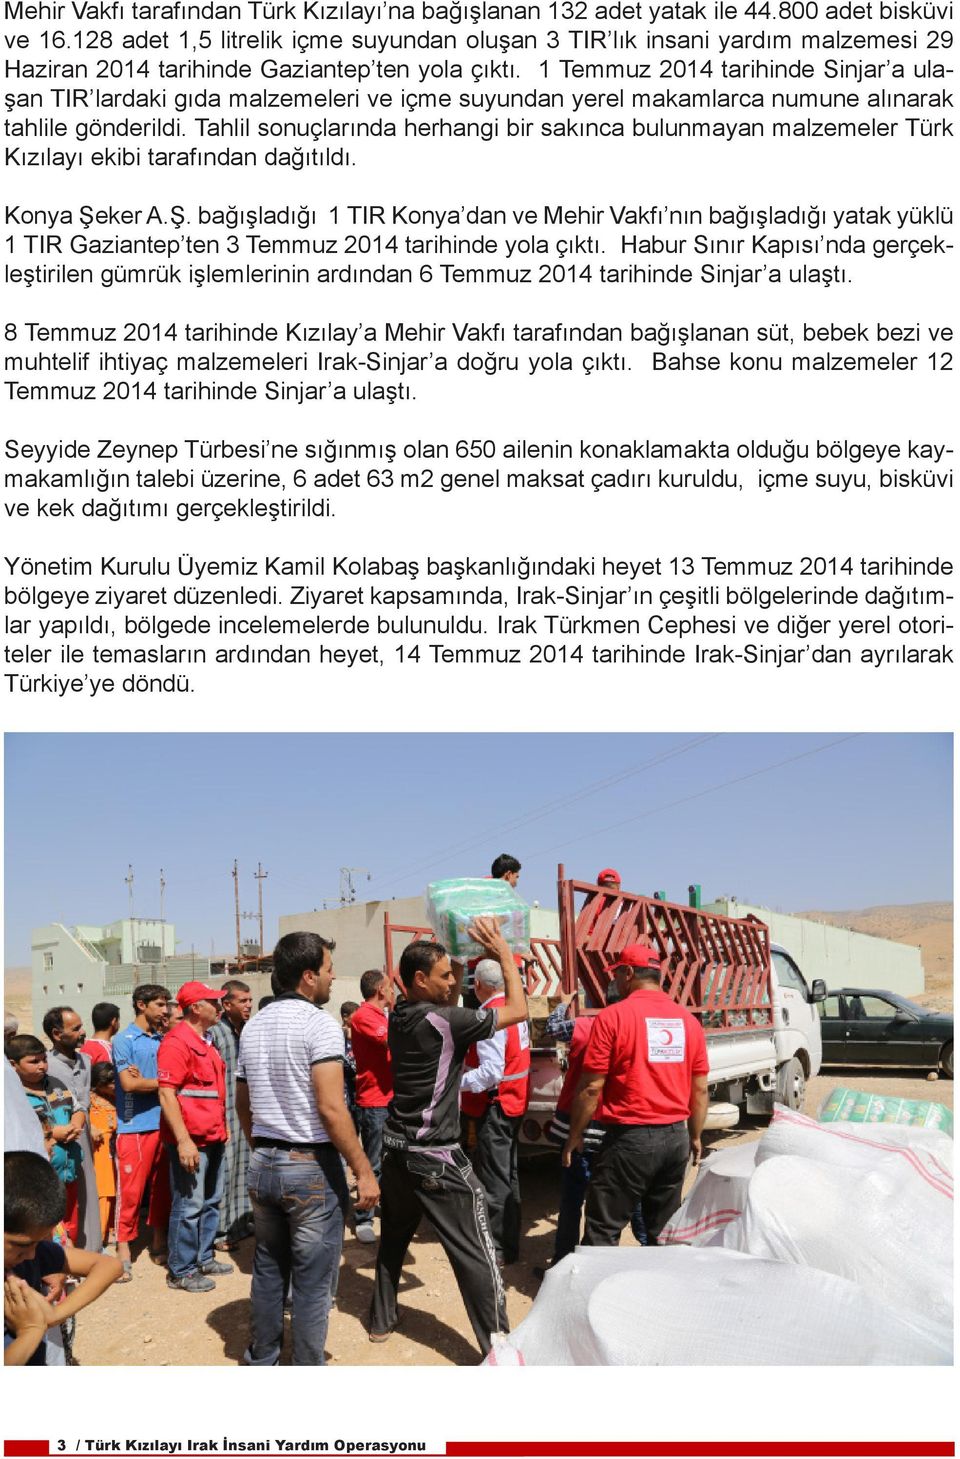 1 Temmuz 2014 tarihinde Sinjar a ulaşan TIR lardaki gıda malzemeleri ve içme suyundan yerel makamlarca numune alınarak tahlile gönderildi.